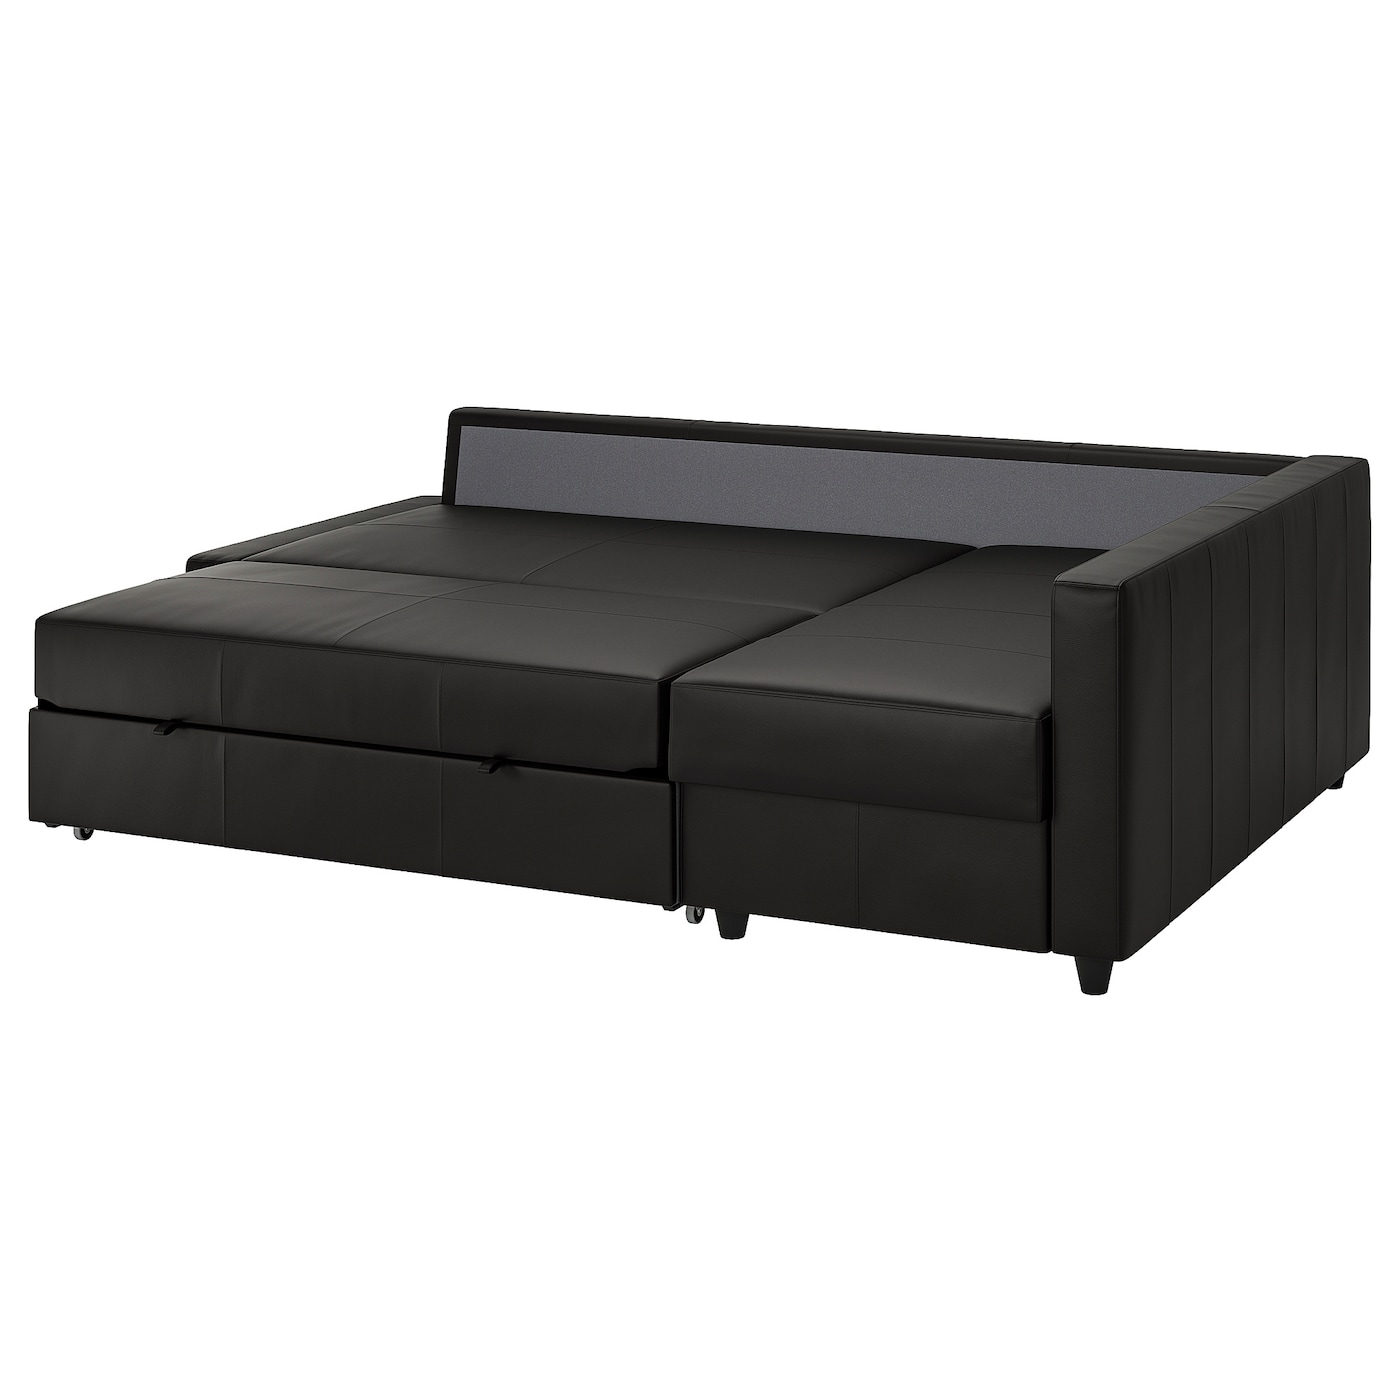 ФРИХЕТЕН Угловой диван-кровать + место для хранения, Бомстад черный FRIHETEN IKEA кровать диван ру весмар 180 velvet terra